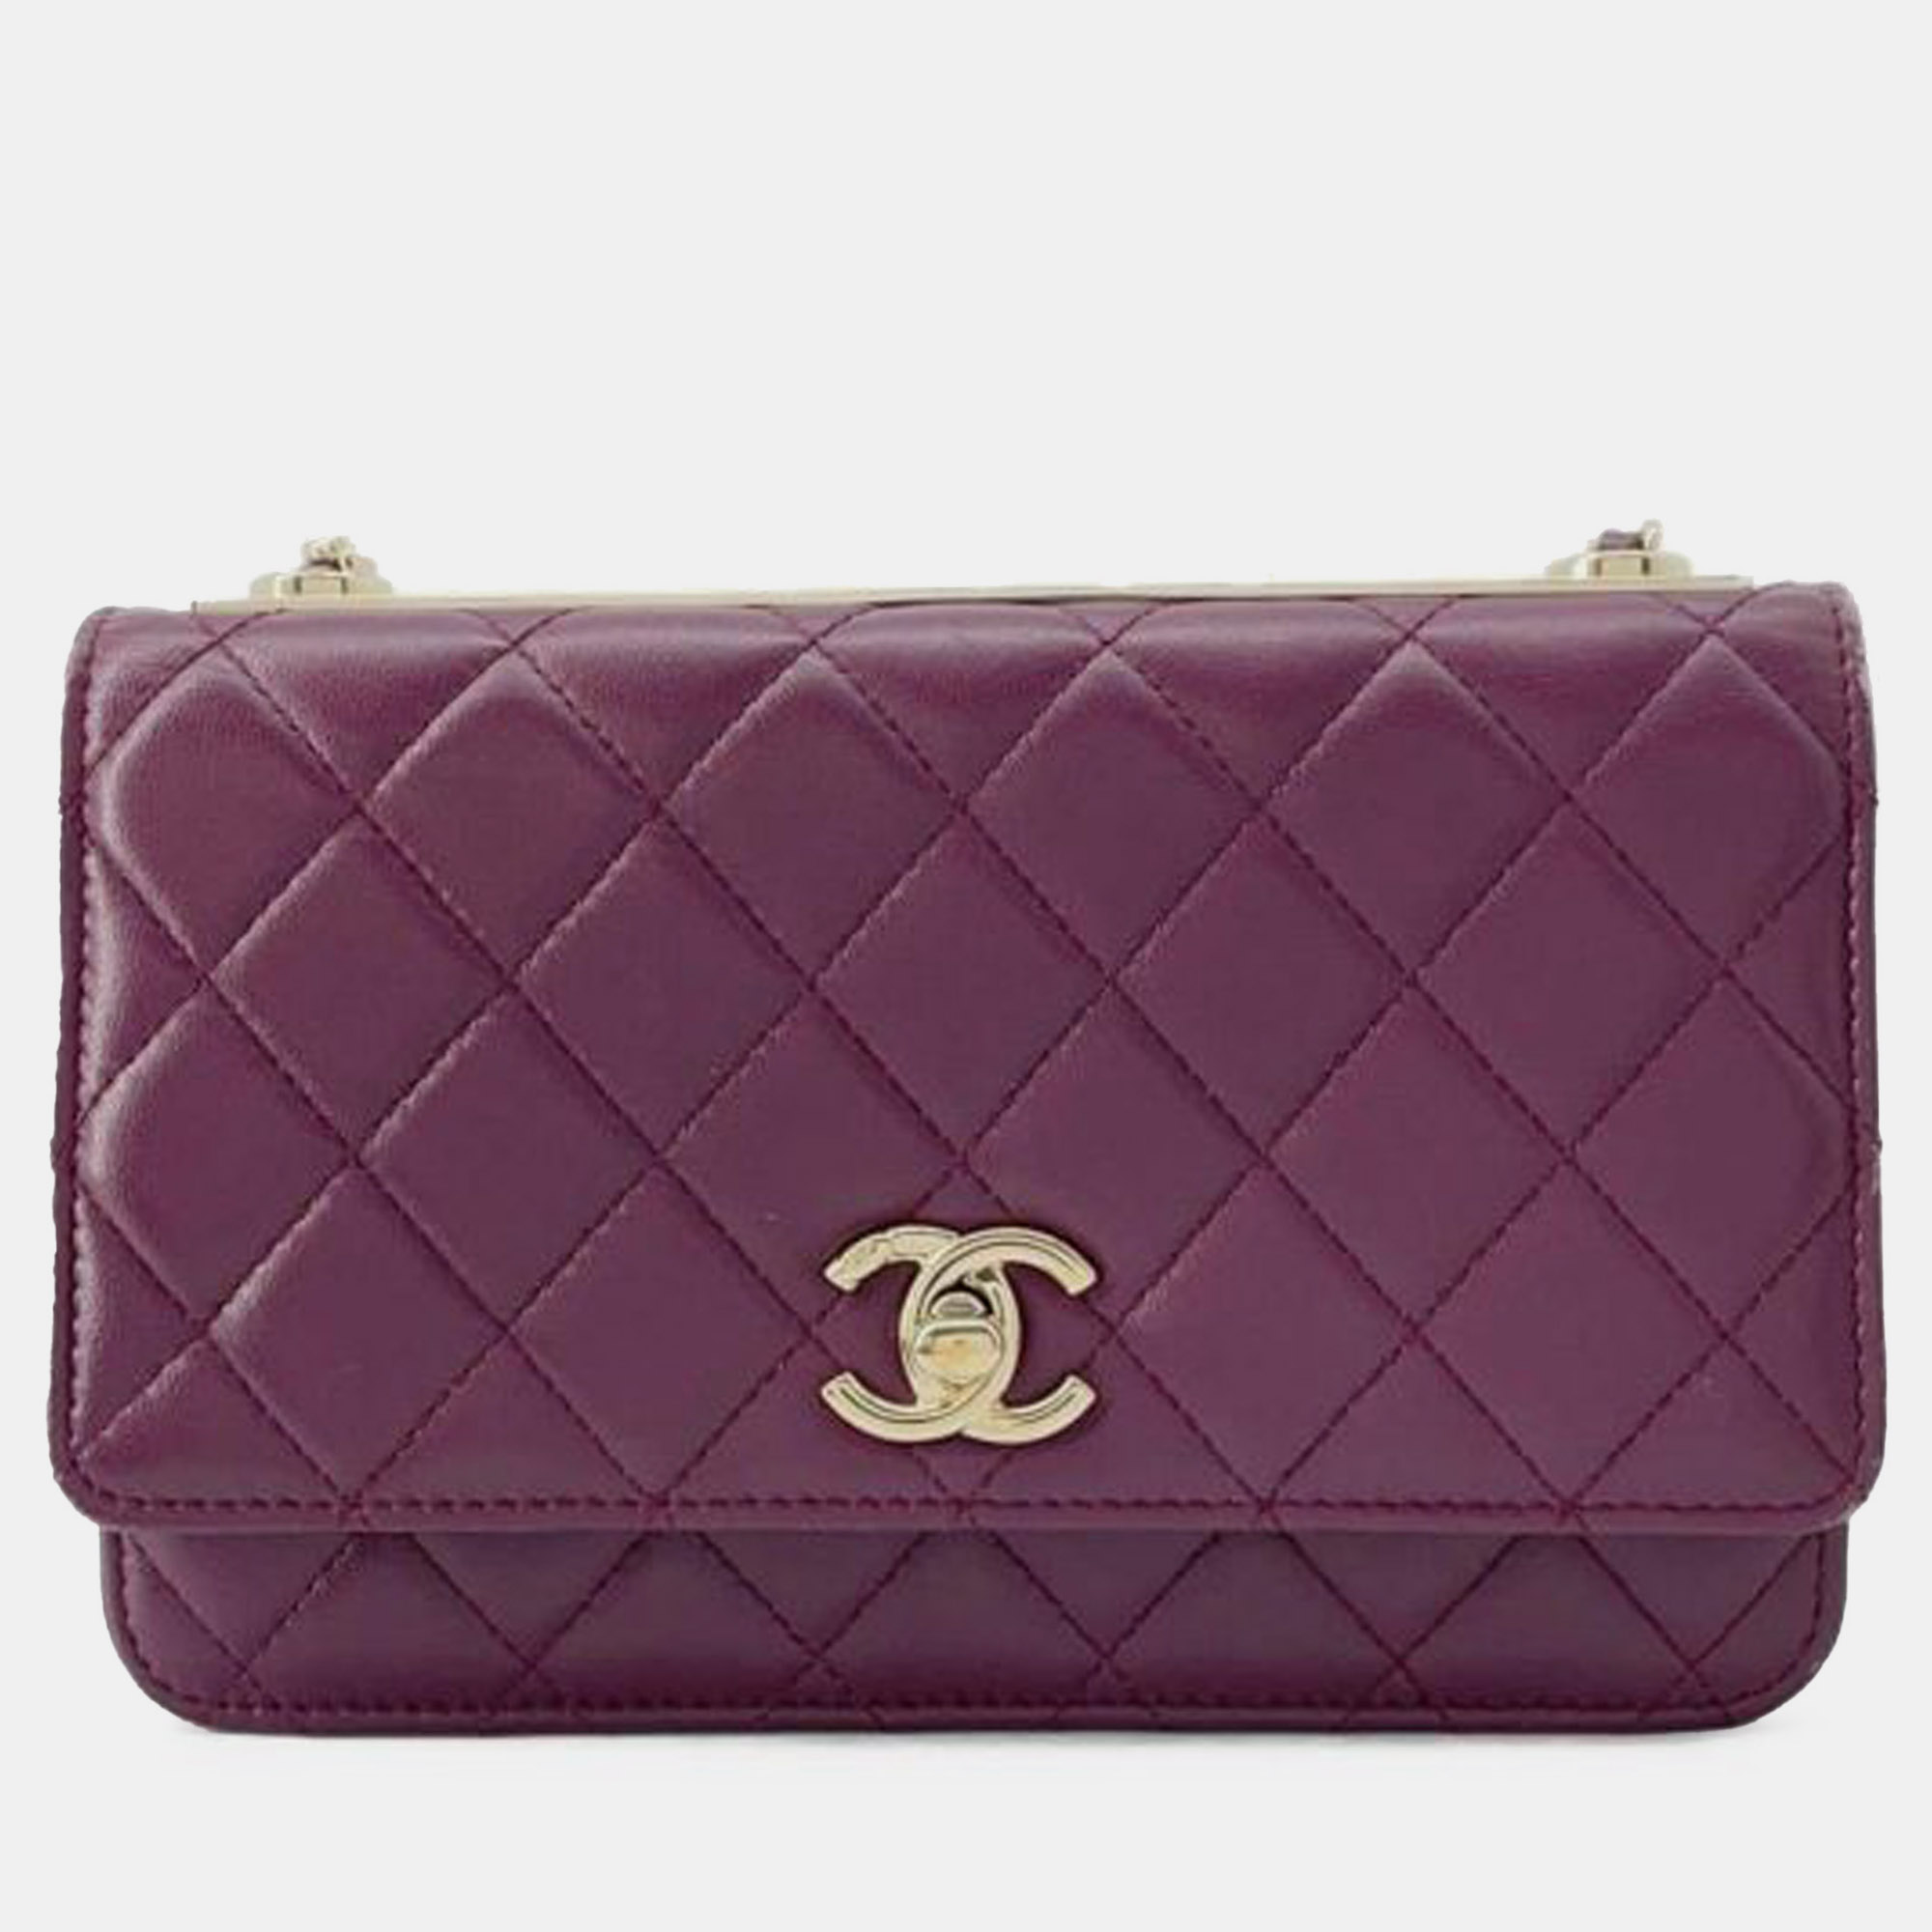 Pre-owned Chanel Lambskin Trendy Cc Wallet On Chain In Purple